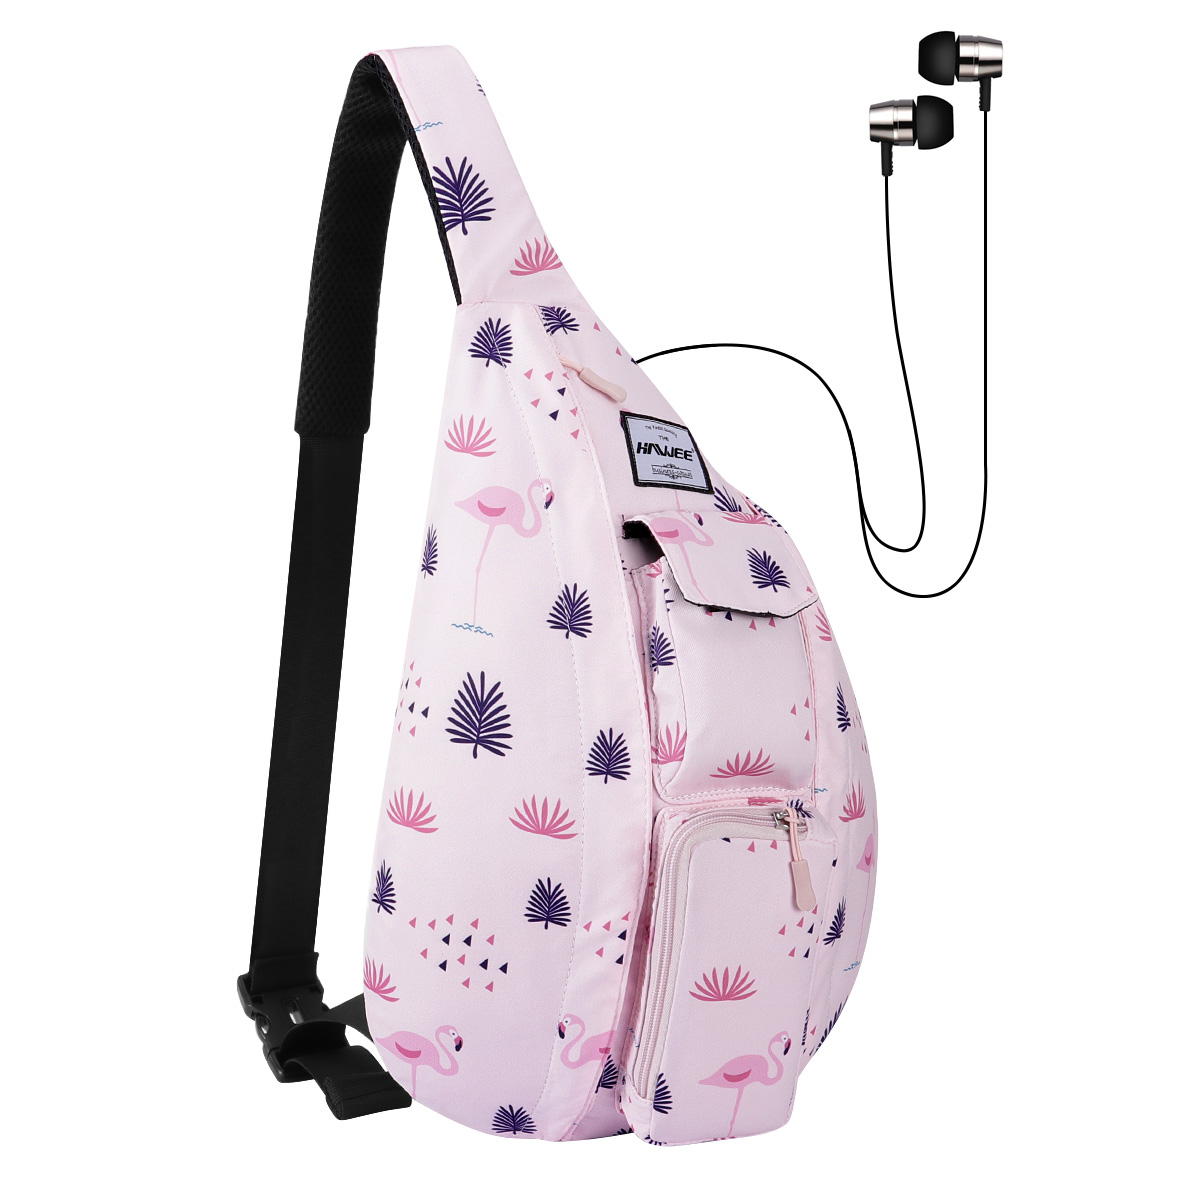 HAWEE Shoulder Sling Bag Hiking Backpack Chest Sling Bag Travel Crossbody Daypack for Women, Flamingo Pink - image 1 of 7